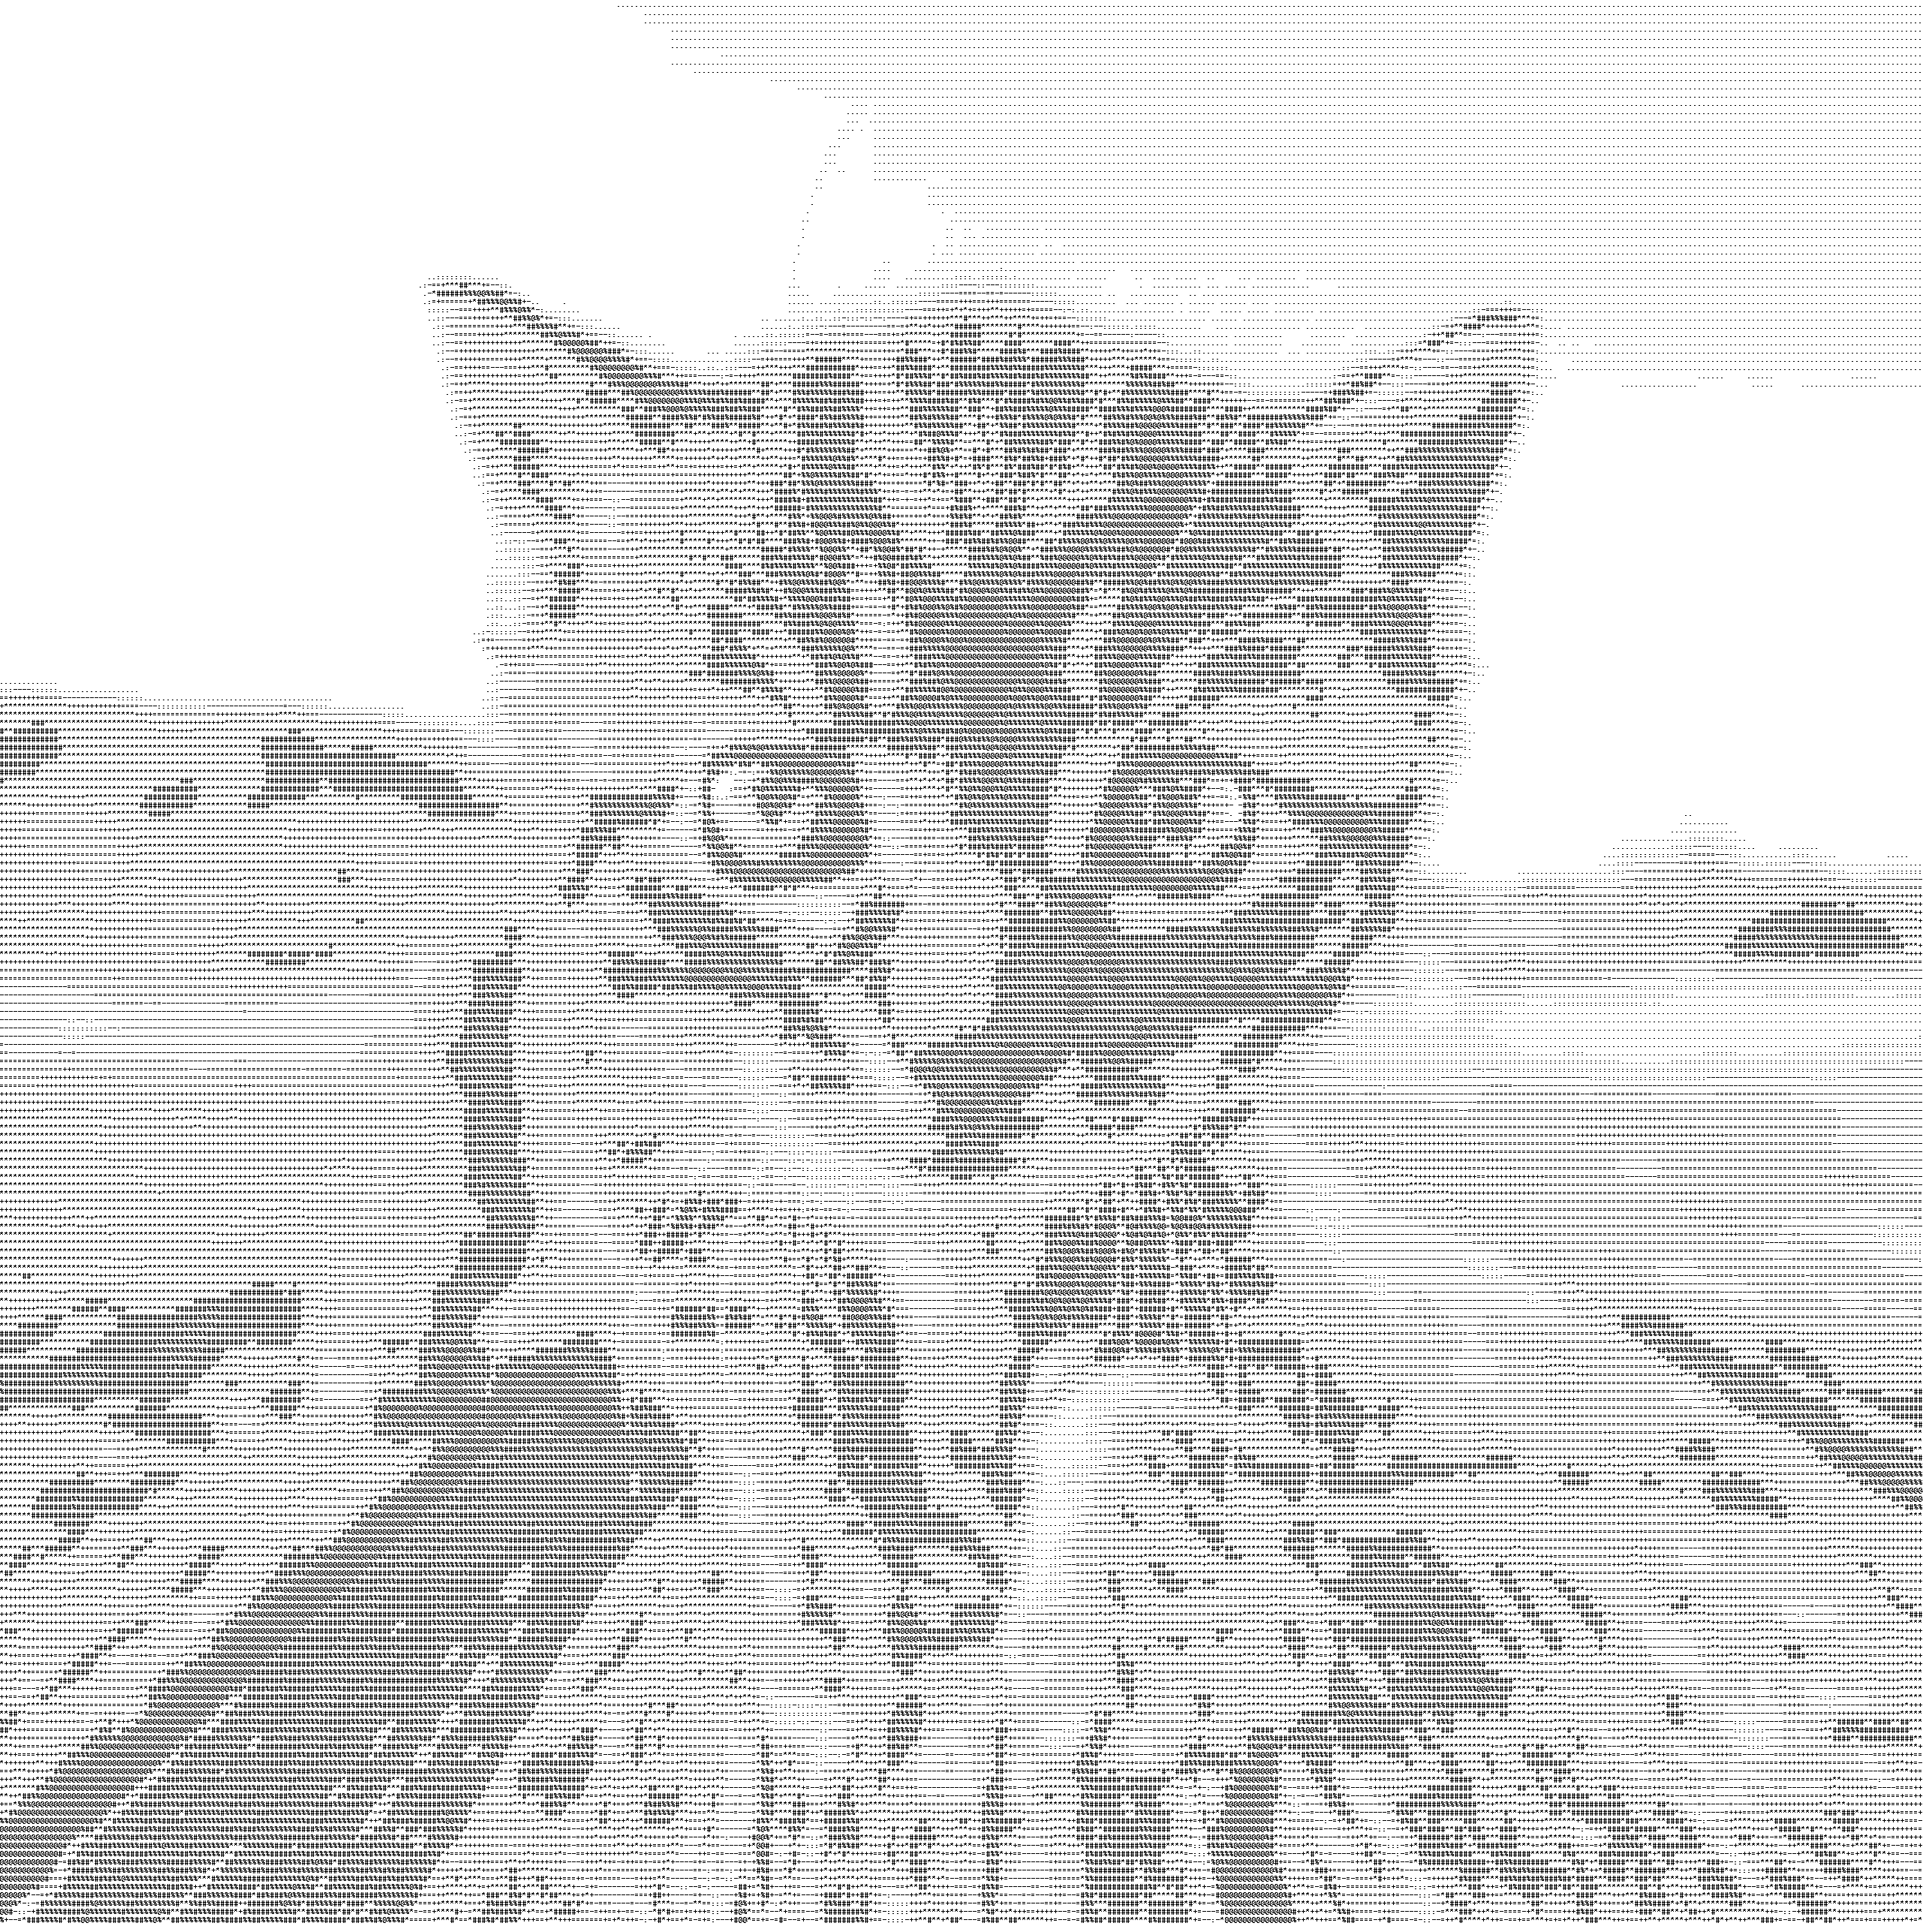 cat_scale5_draw_ascii.png